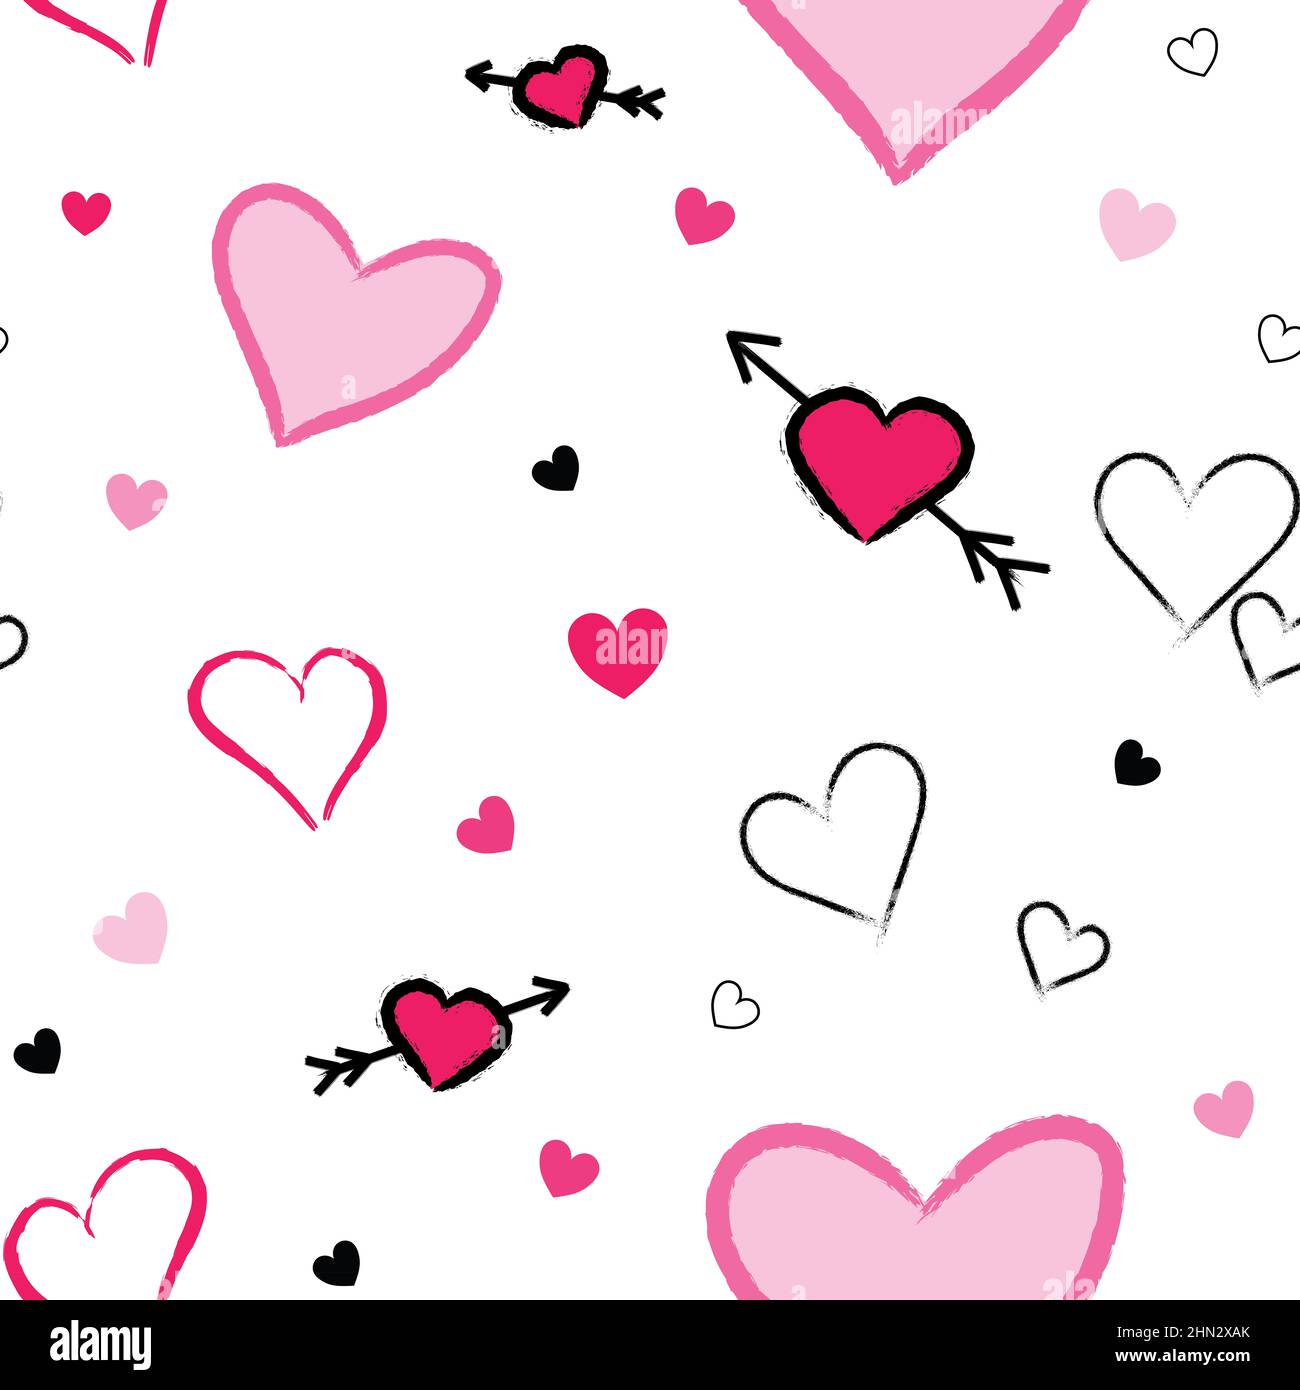 Hãy thể hiện tình yêu của bạn trên thiết kế của mình với Valentine\'s Day pattern. Gợi ý cho thiết kế của bạn với bộ sưu tập các mẫu thiết kế Valentine\'s Day đáng yêu, sáng tạo và mang tính lãng mạn.